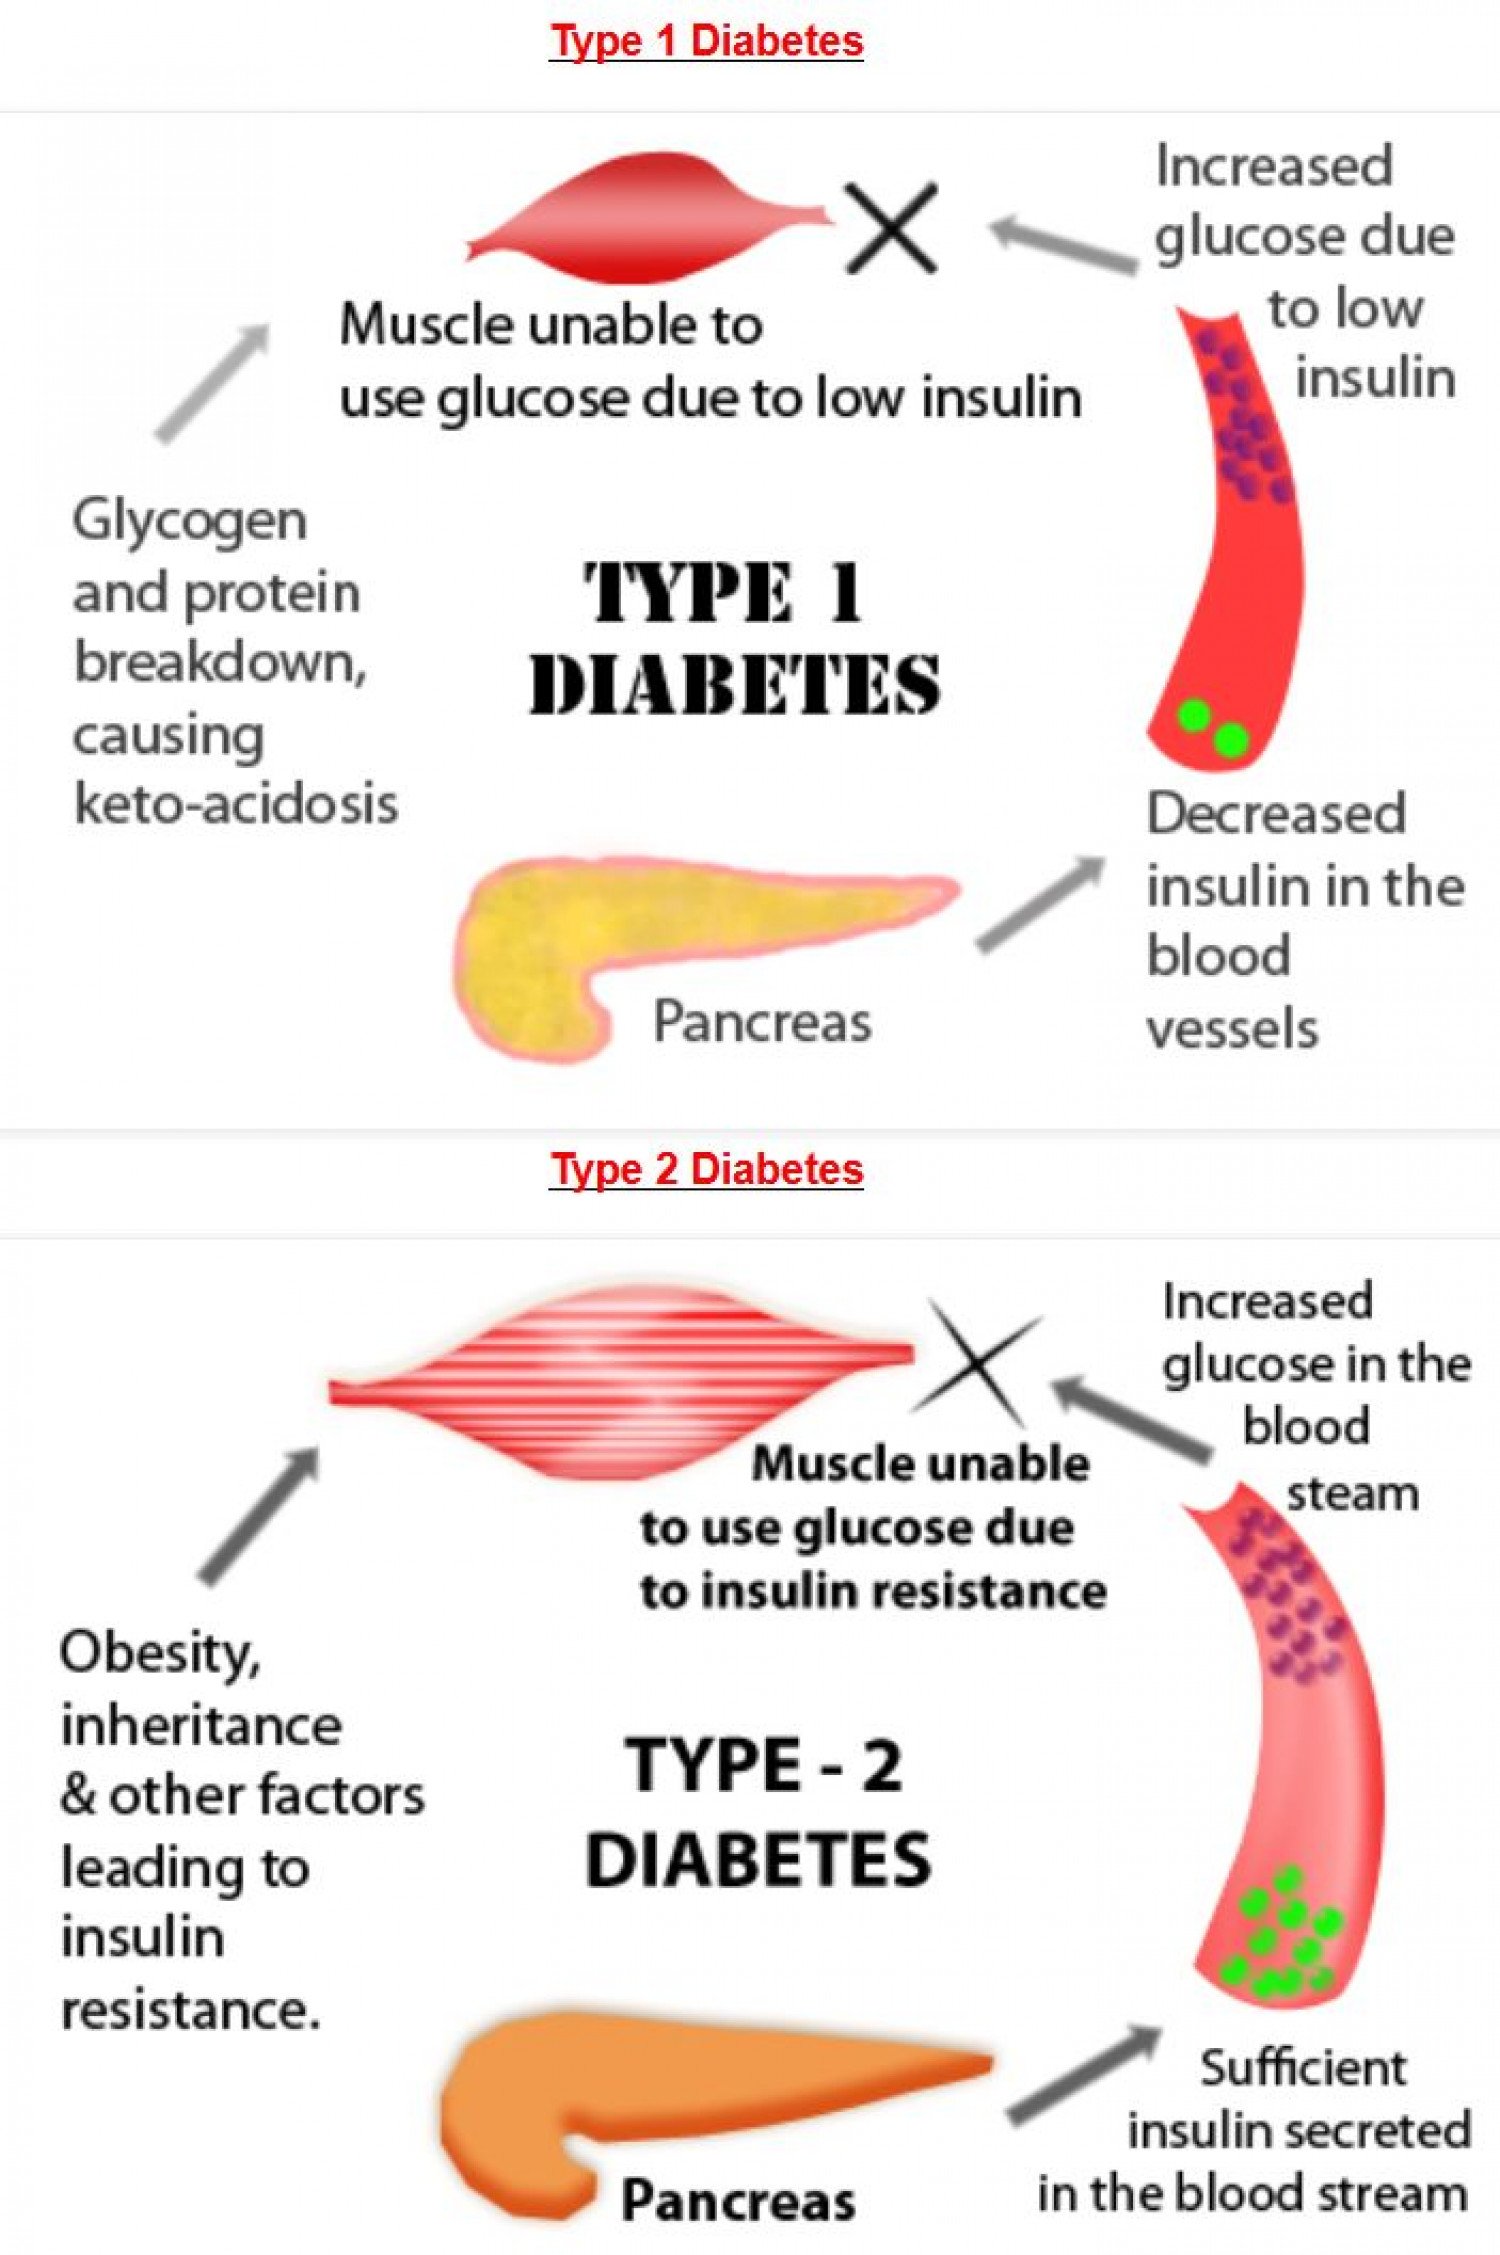 Diabetes: Type 1 Diabetes v/s Type 2 Diabetes